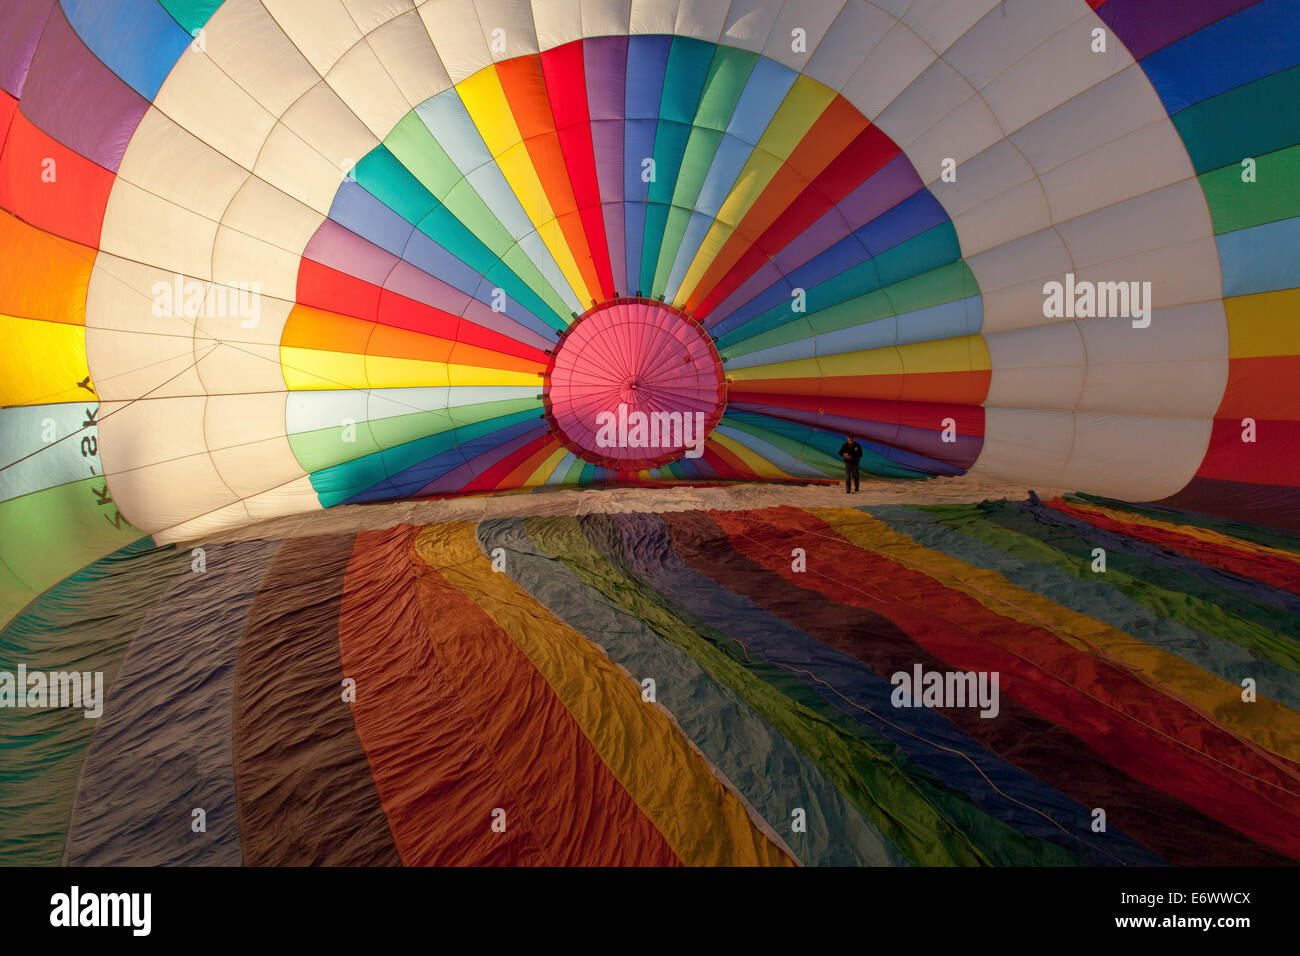 Montgolfière aux couleurs vives de l'intérieur, sur le point d'être rempli d'air avant le décollage, le sport Banque D'Images